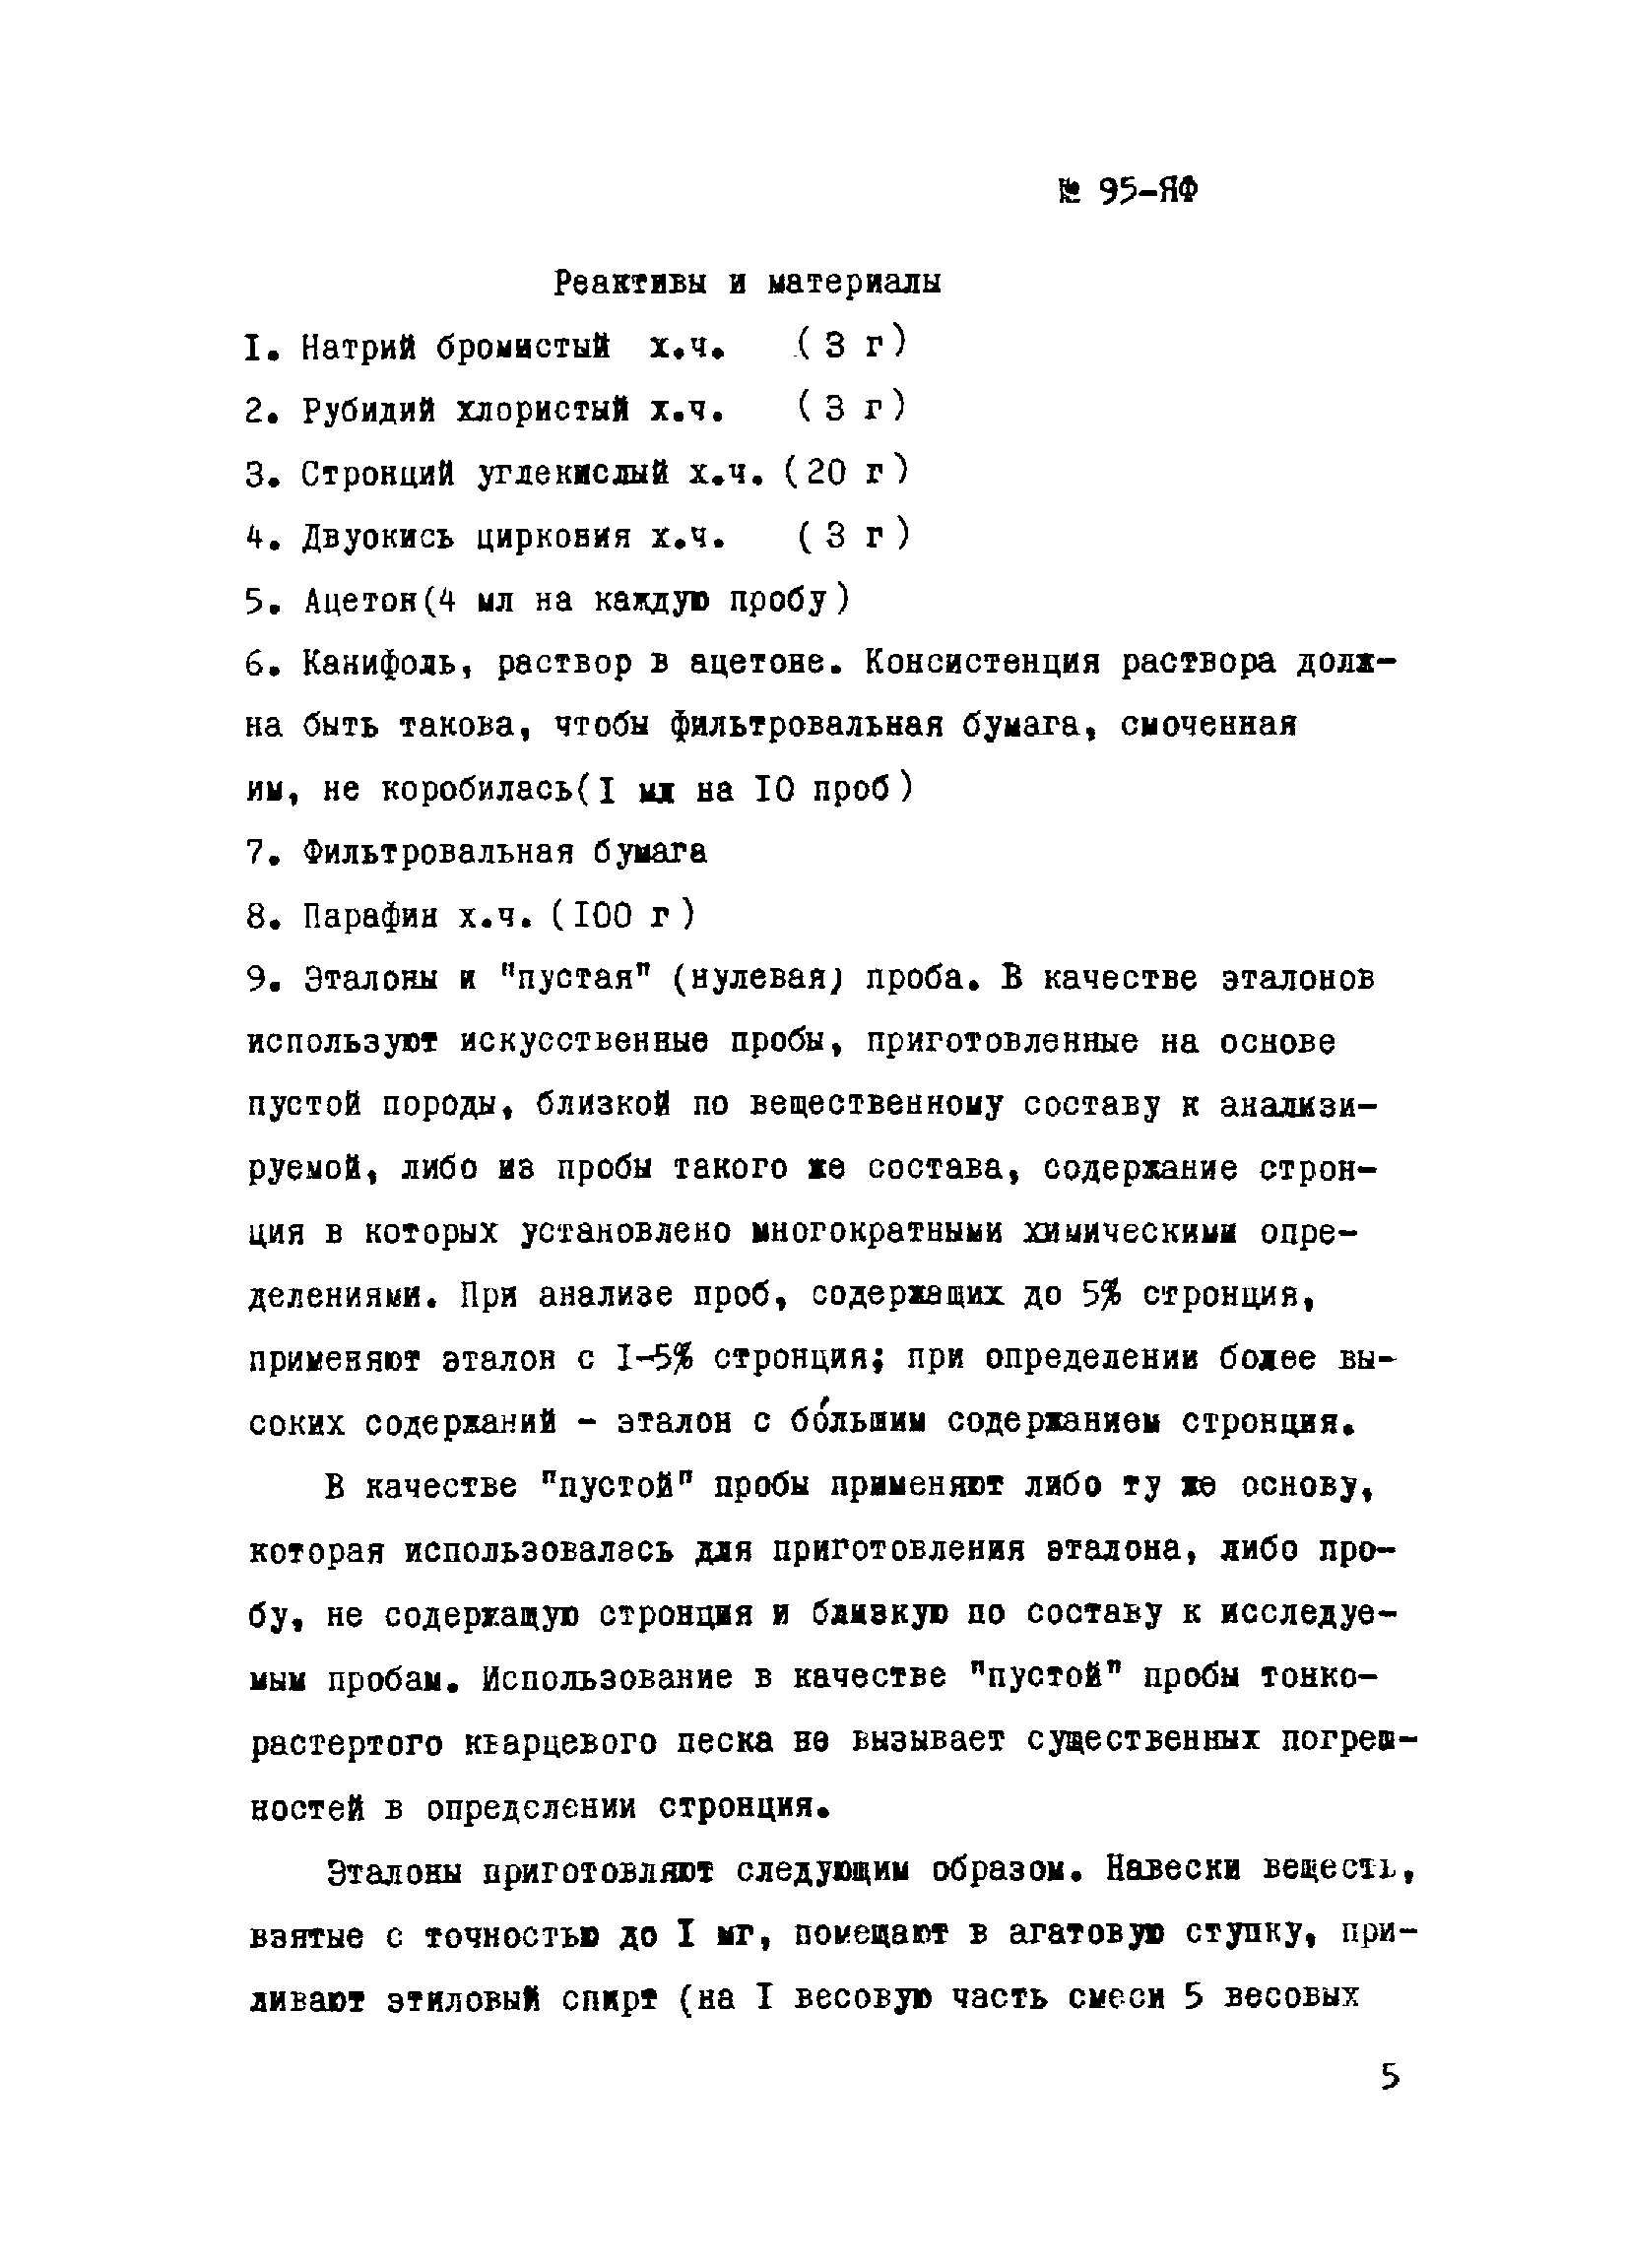 Инструкция НСАМ 95-ЯФ